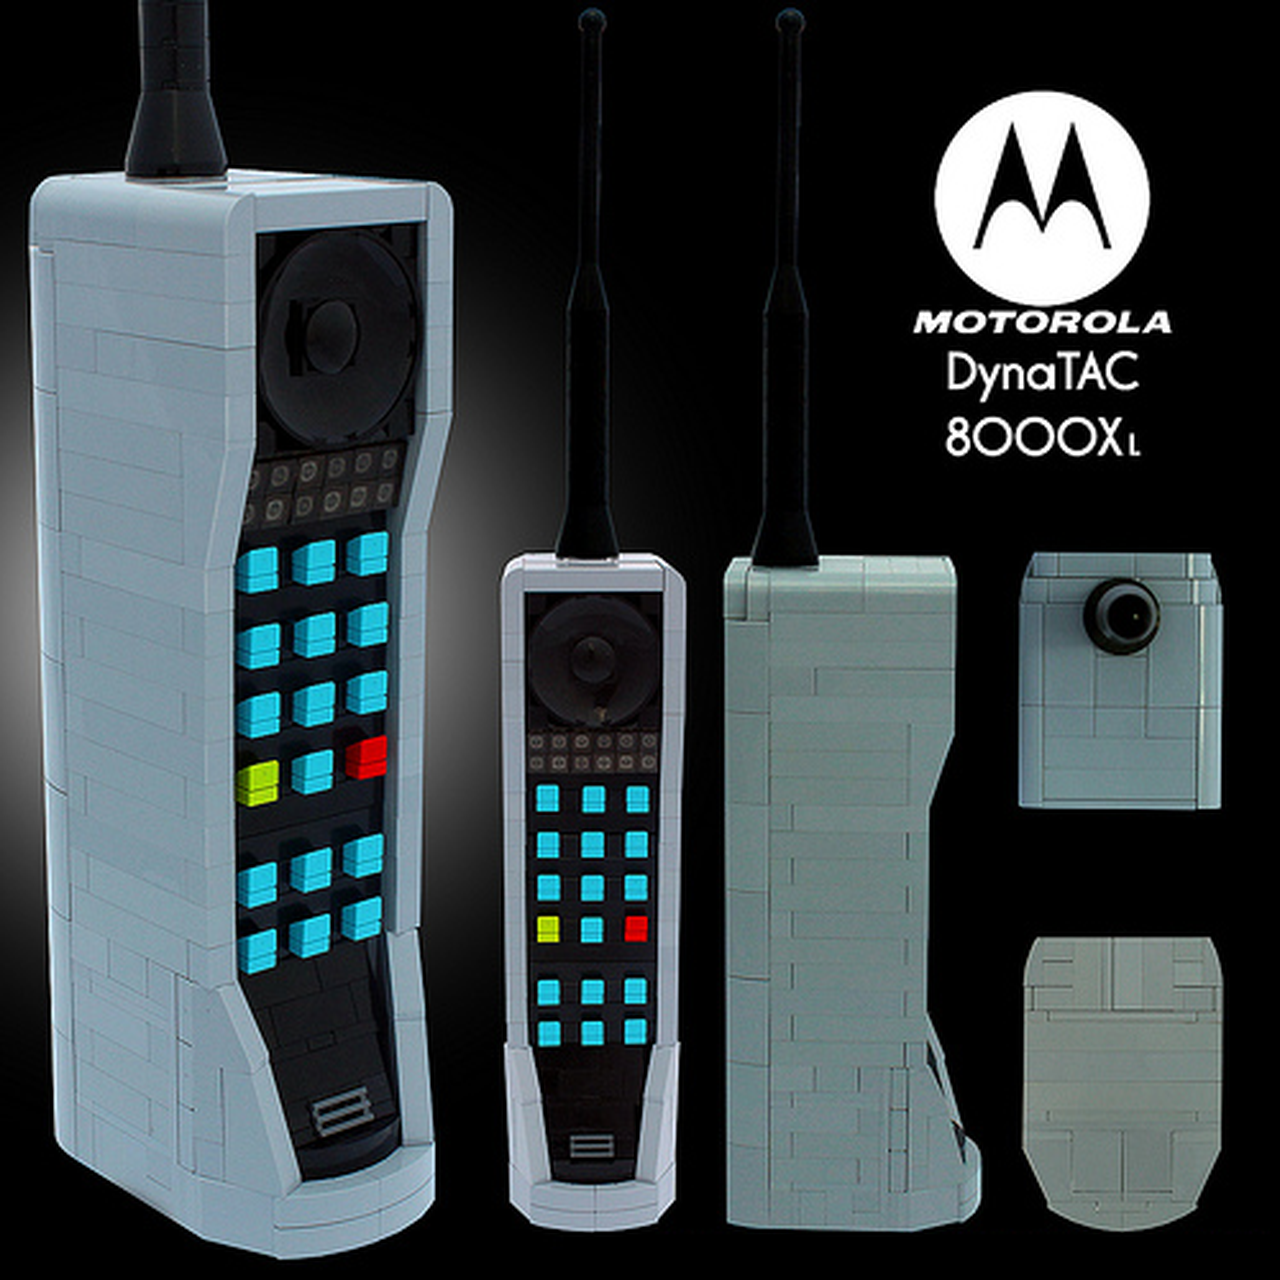 Smartphone cục gạch Motorola DynaTAC sắp được hồi sinh